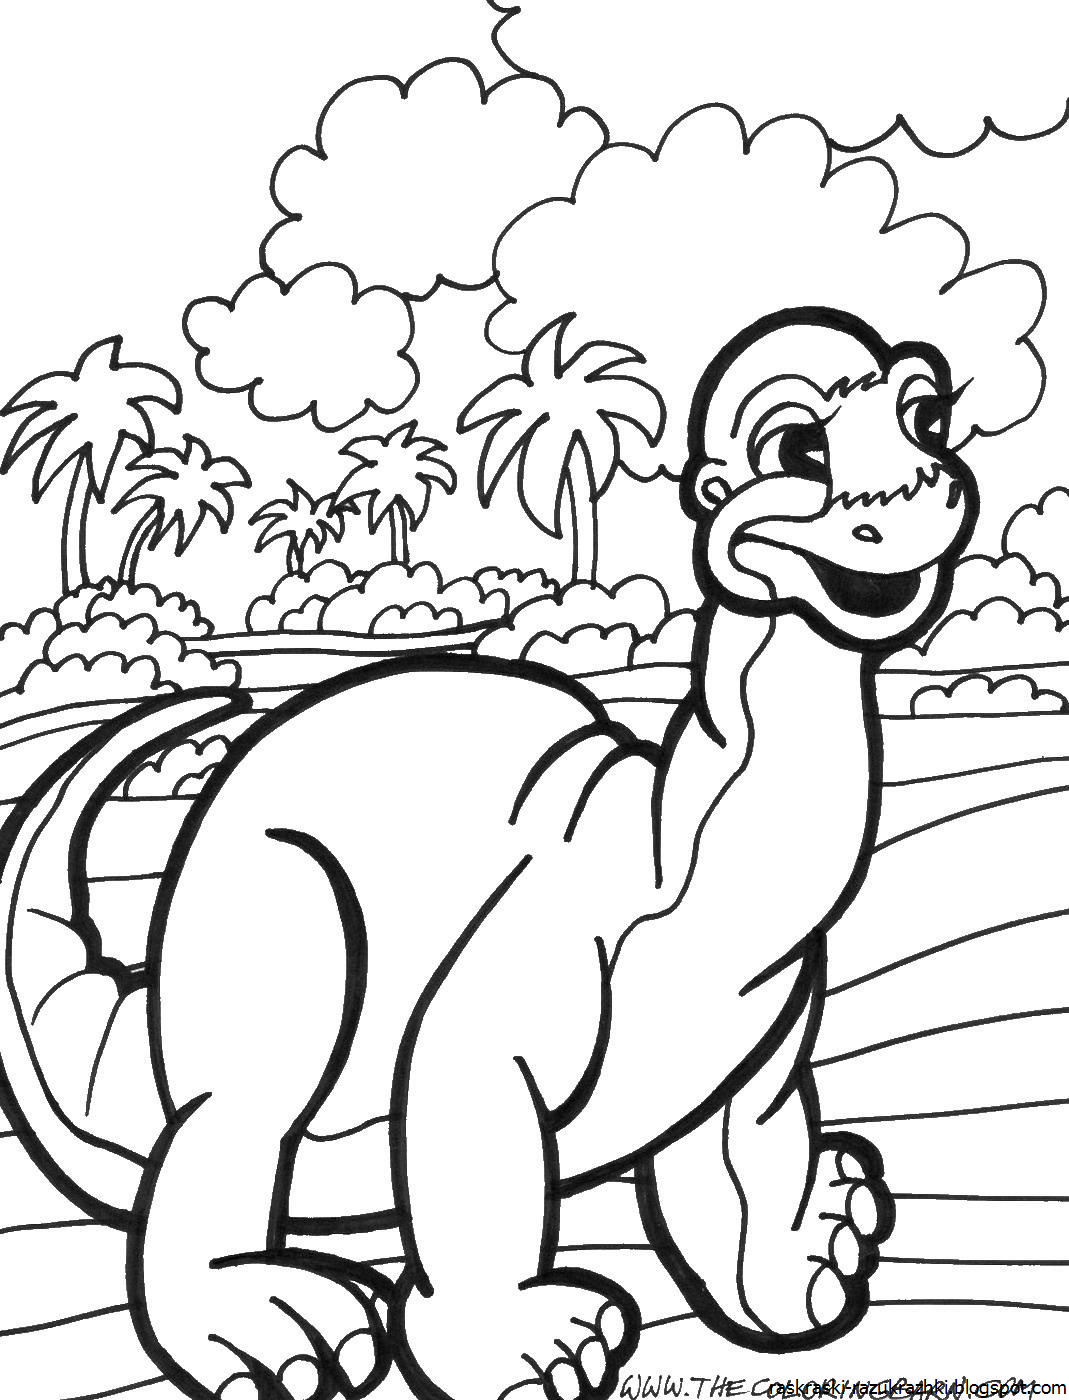 Раскраска динозавр формат а4. Динозавры / раскраска. Динозавры для раскрашивания детям. Динозавр раскраска для детей. Раскраска "Динозаврики".